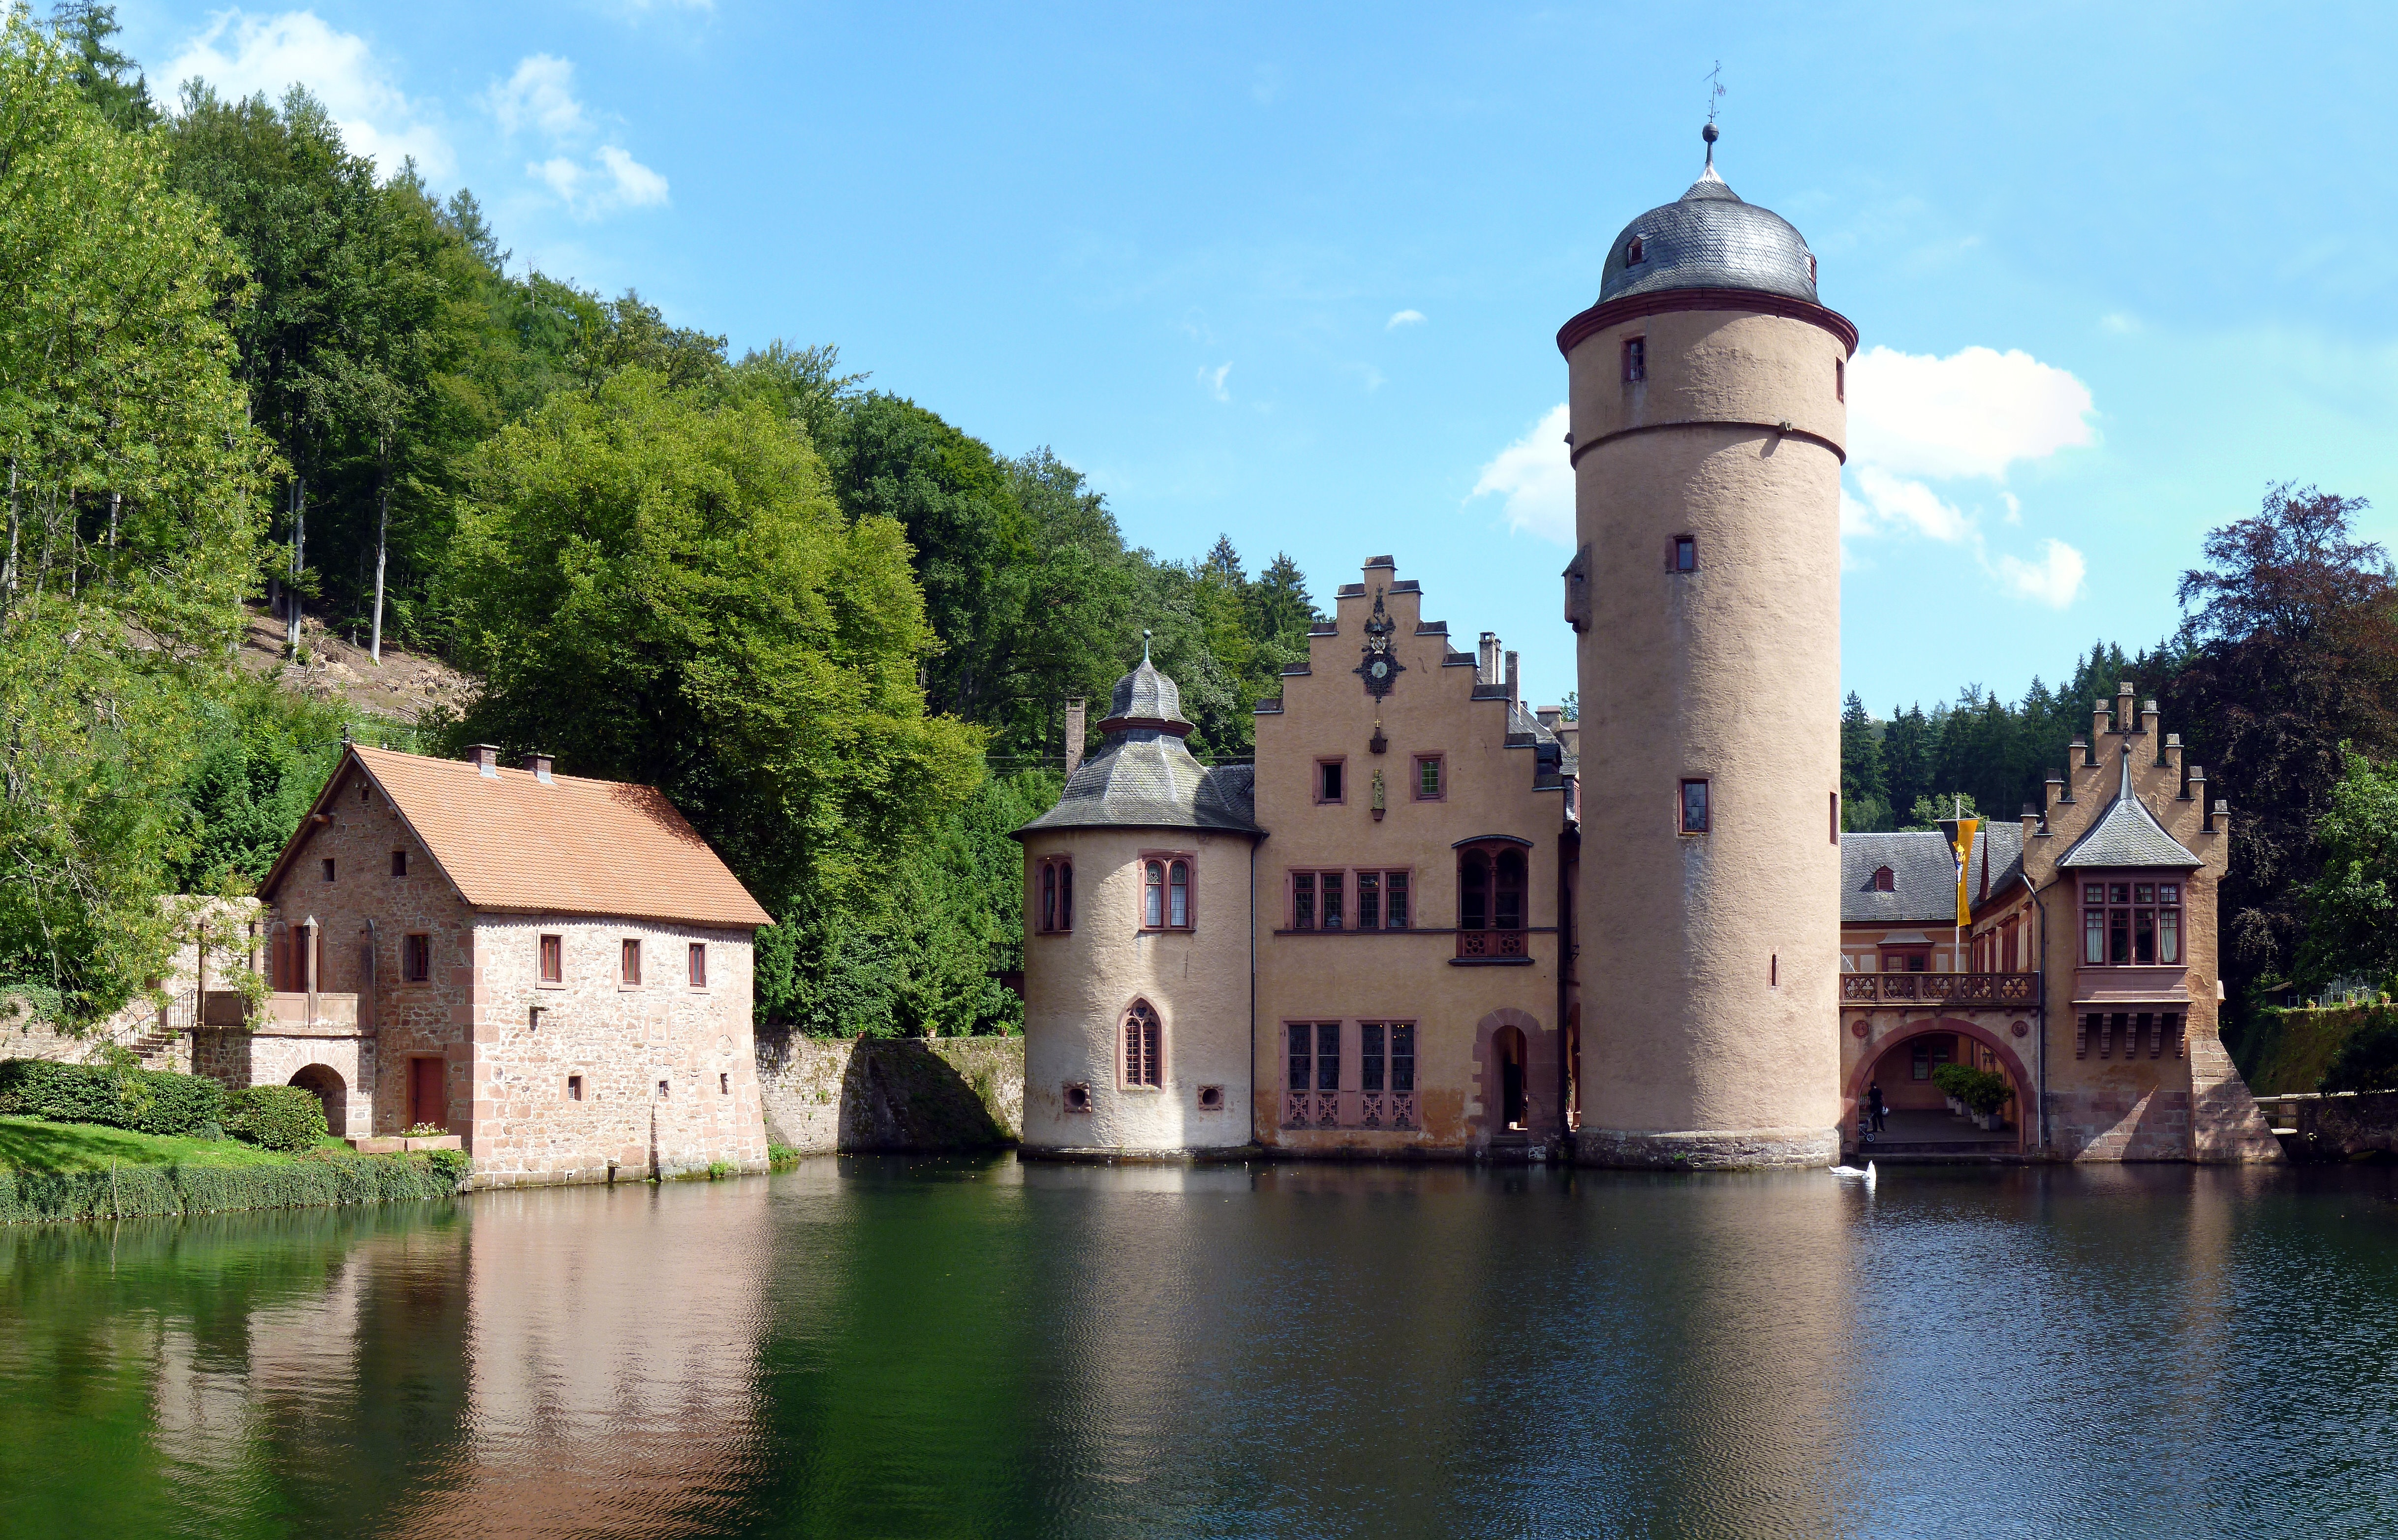 File:Wasserschloss Mespelbrunn, 6.jpg - Wikimedia Commons